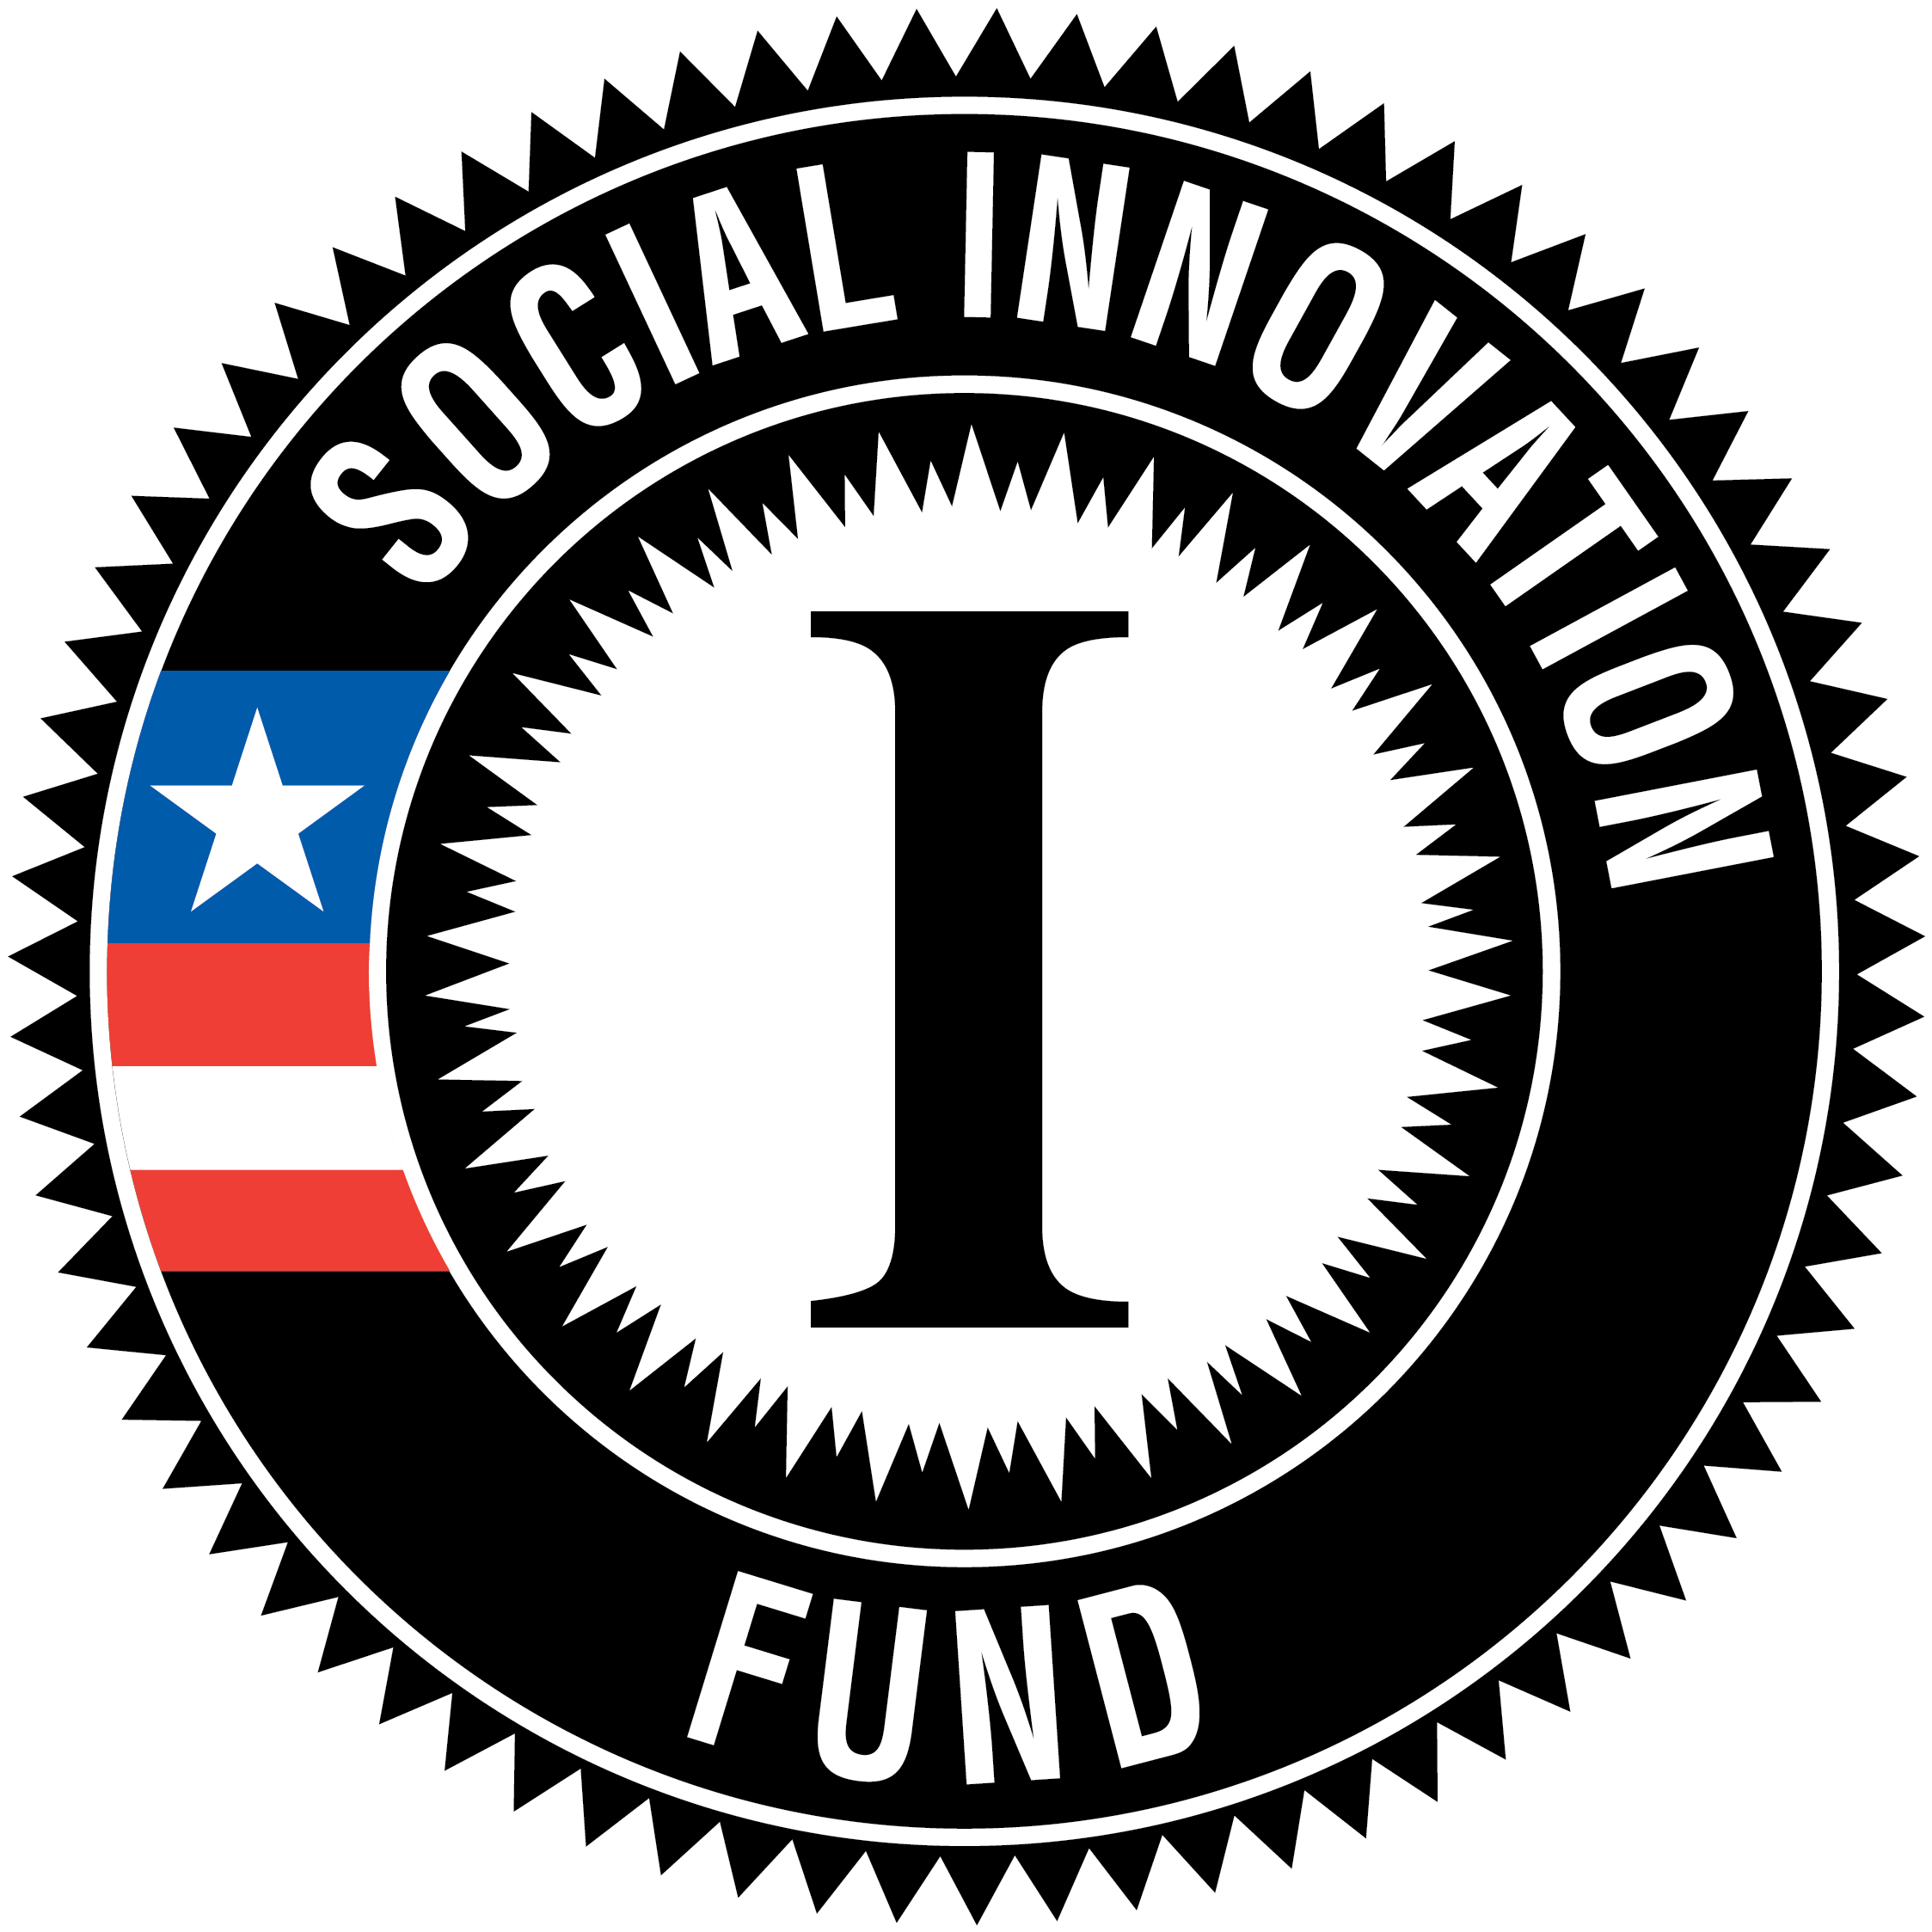 Social Innovation Fund